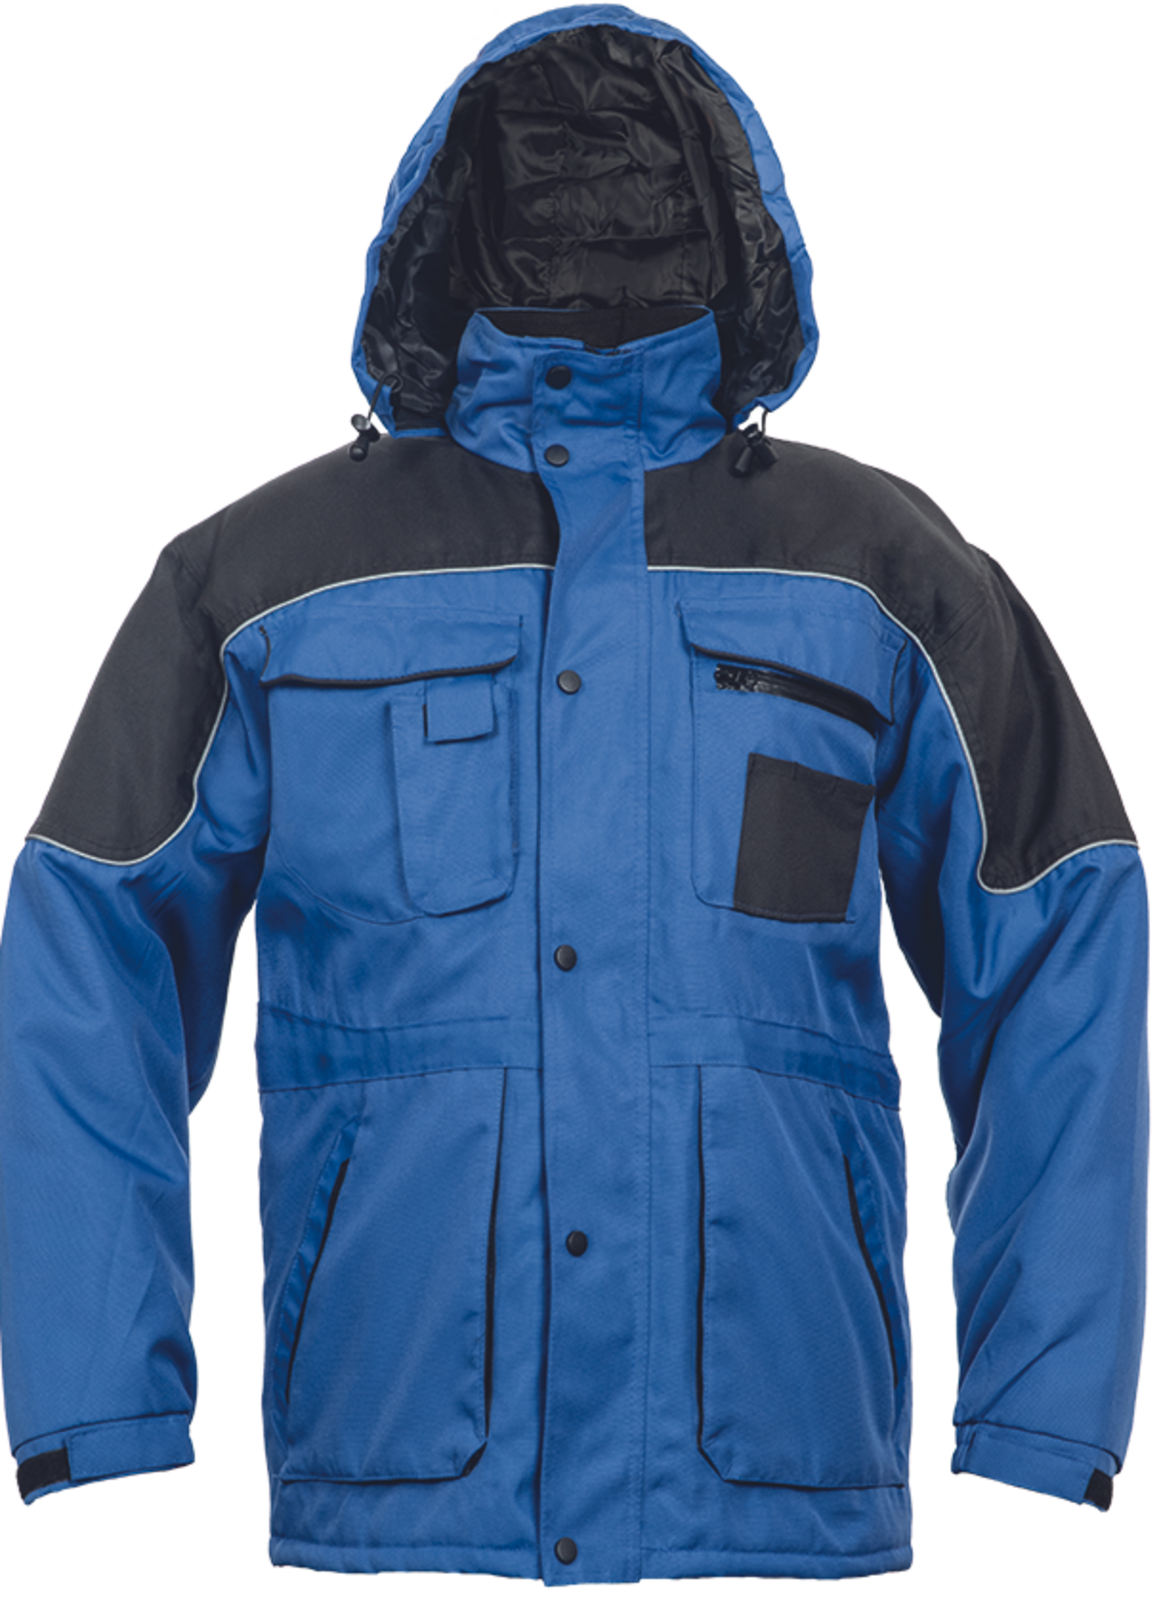 Pracovná bunda Ultimo pánska - veľkosť: M, farba: modrá/čierna